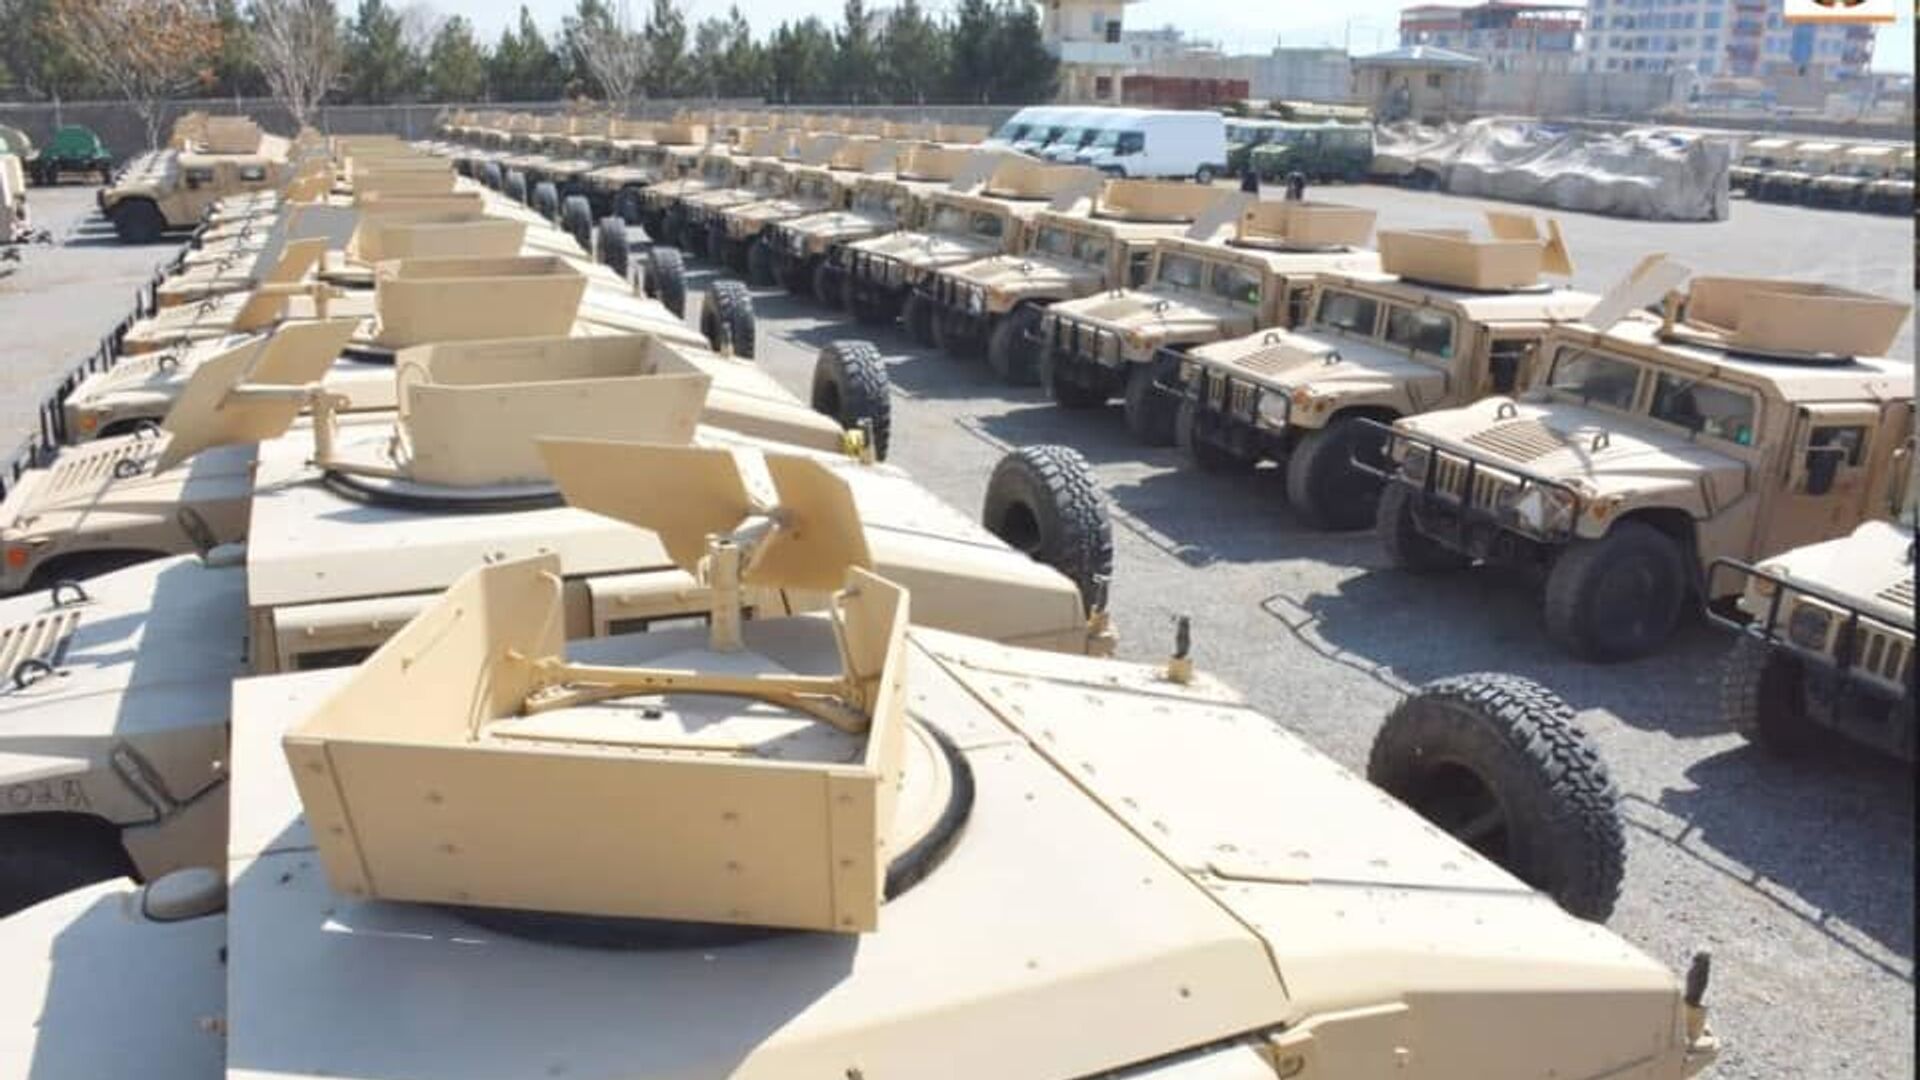   امریکا بیش از ۴۰۰ تانک هاموی جدید را به ارتش افغانستان داد  - اسپوتنیک افغانستان  , 1920, 27.06.2022